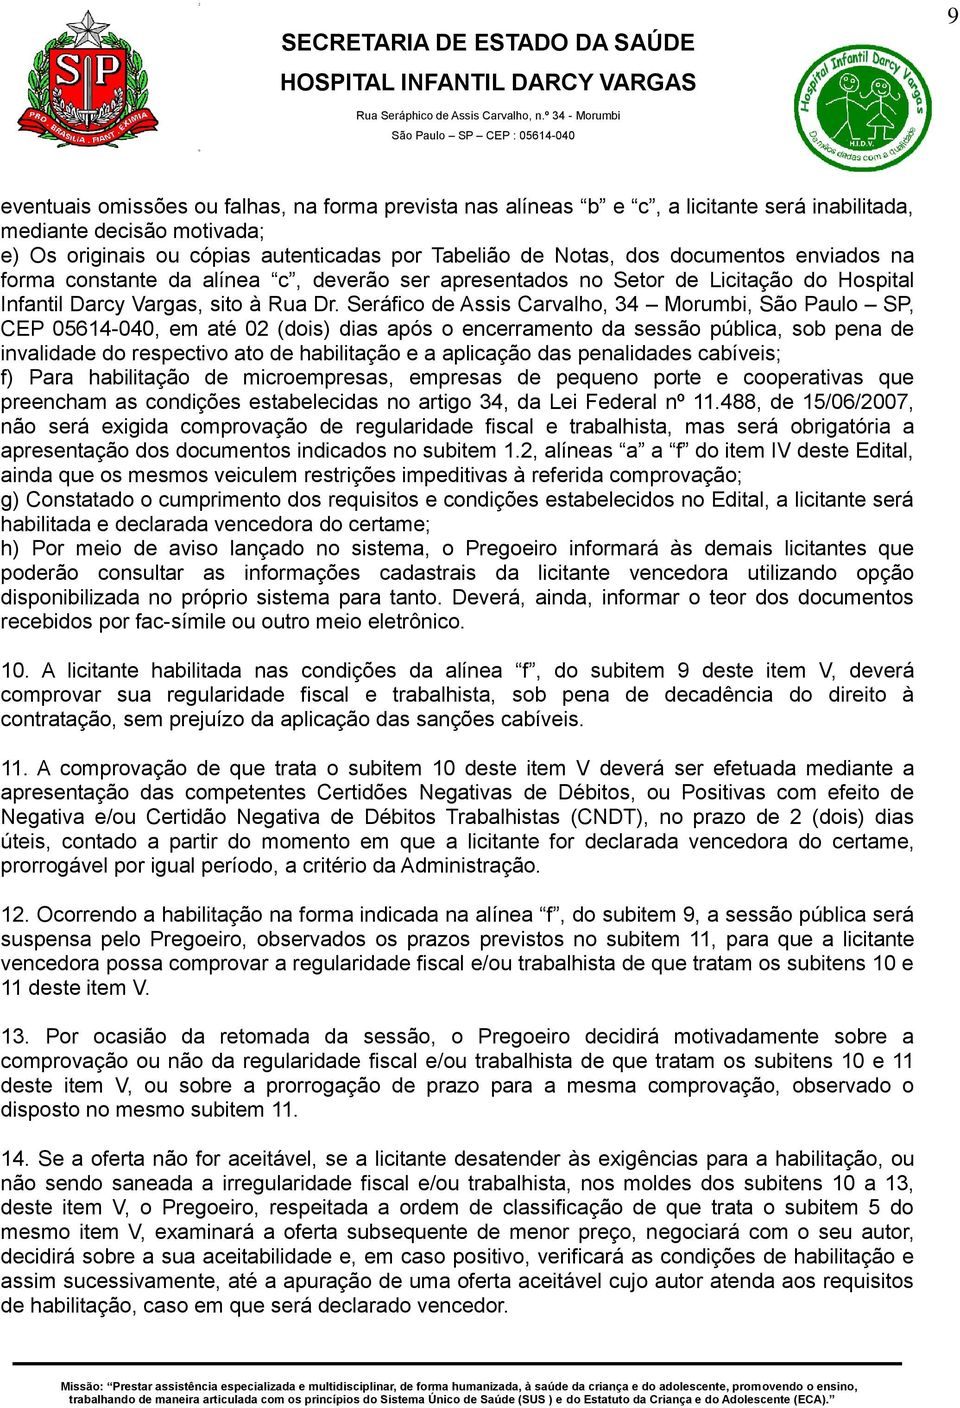 Seráfico de Assis Carvalho, 34 Morumbi, São Paulo SP, CEP 05614-040, em até 02 (dois) dias após o encerramento da sessão pública, sob pena de invalidade do respectivo ato de habilitação e a aplicação